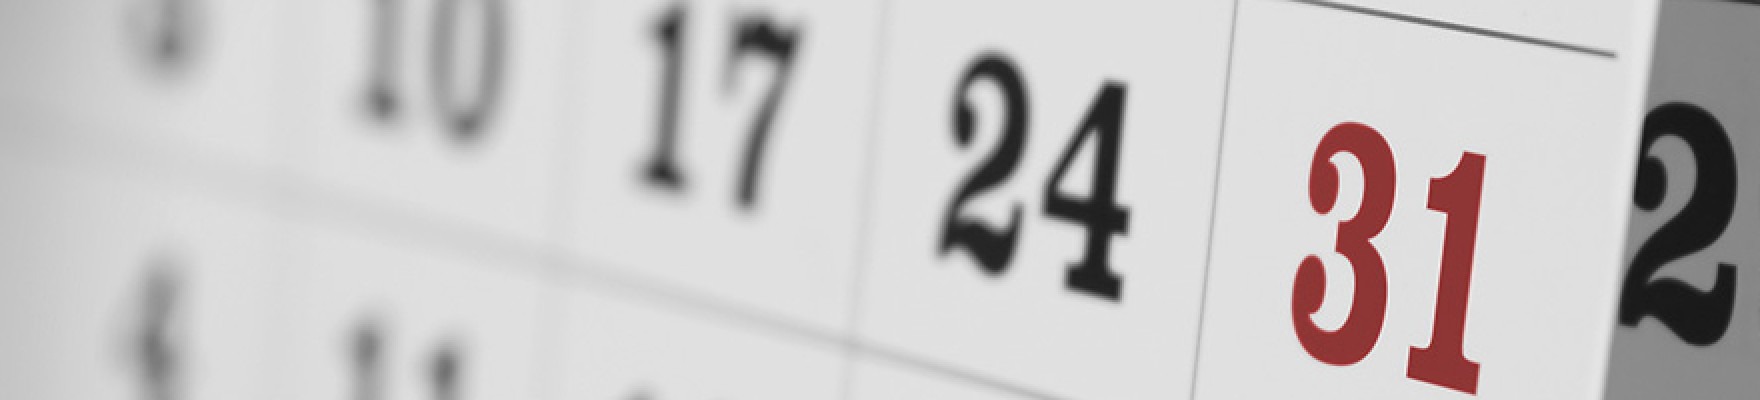 Close up of a black and white calendar 